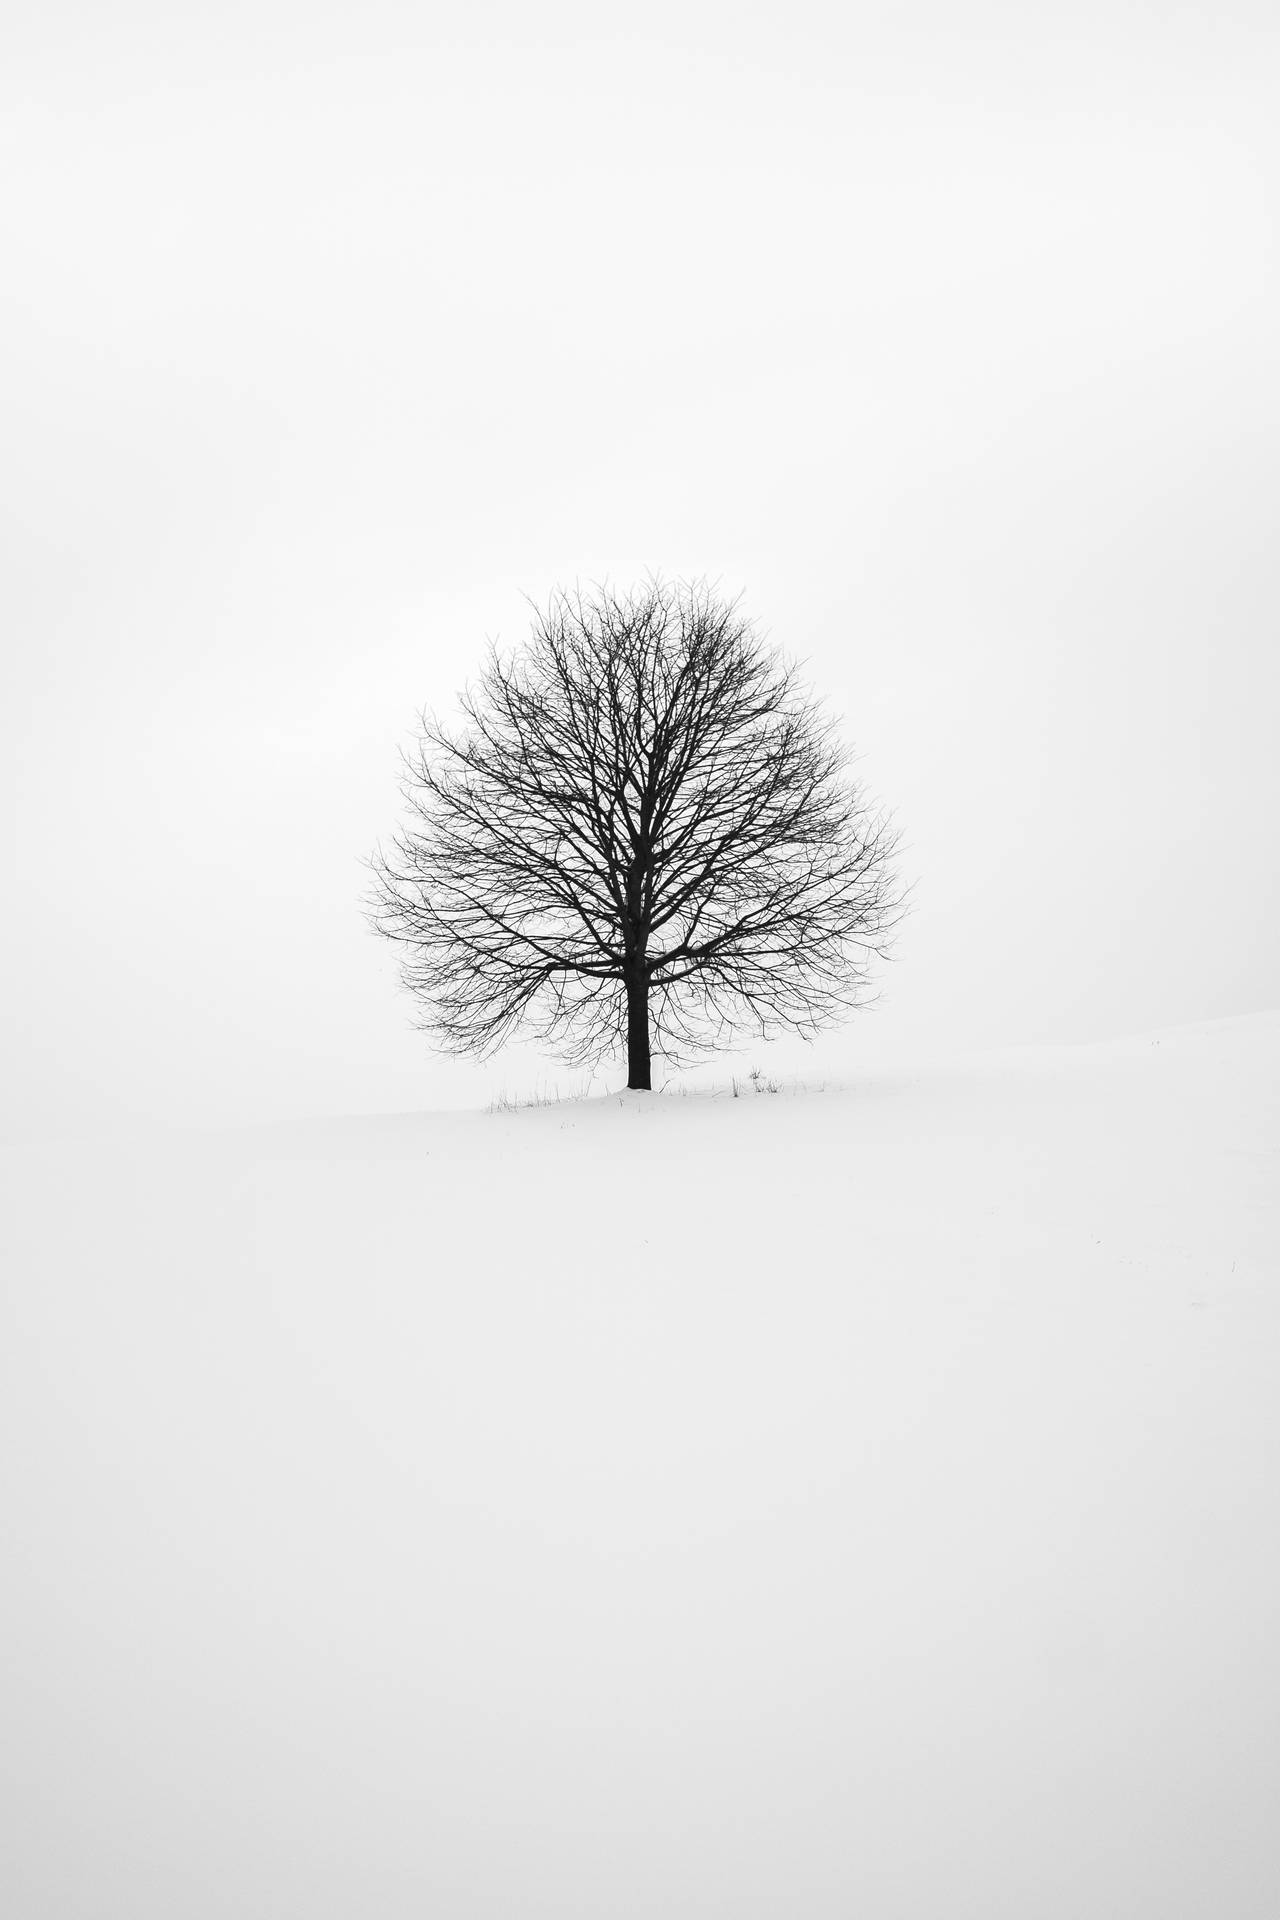 Minimal Winter Tree Cool Ipad